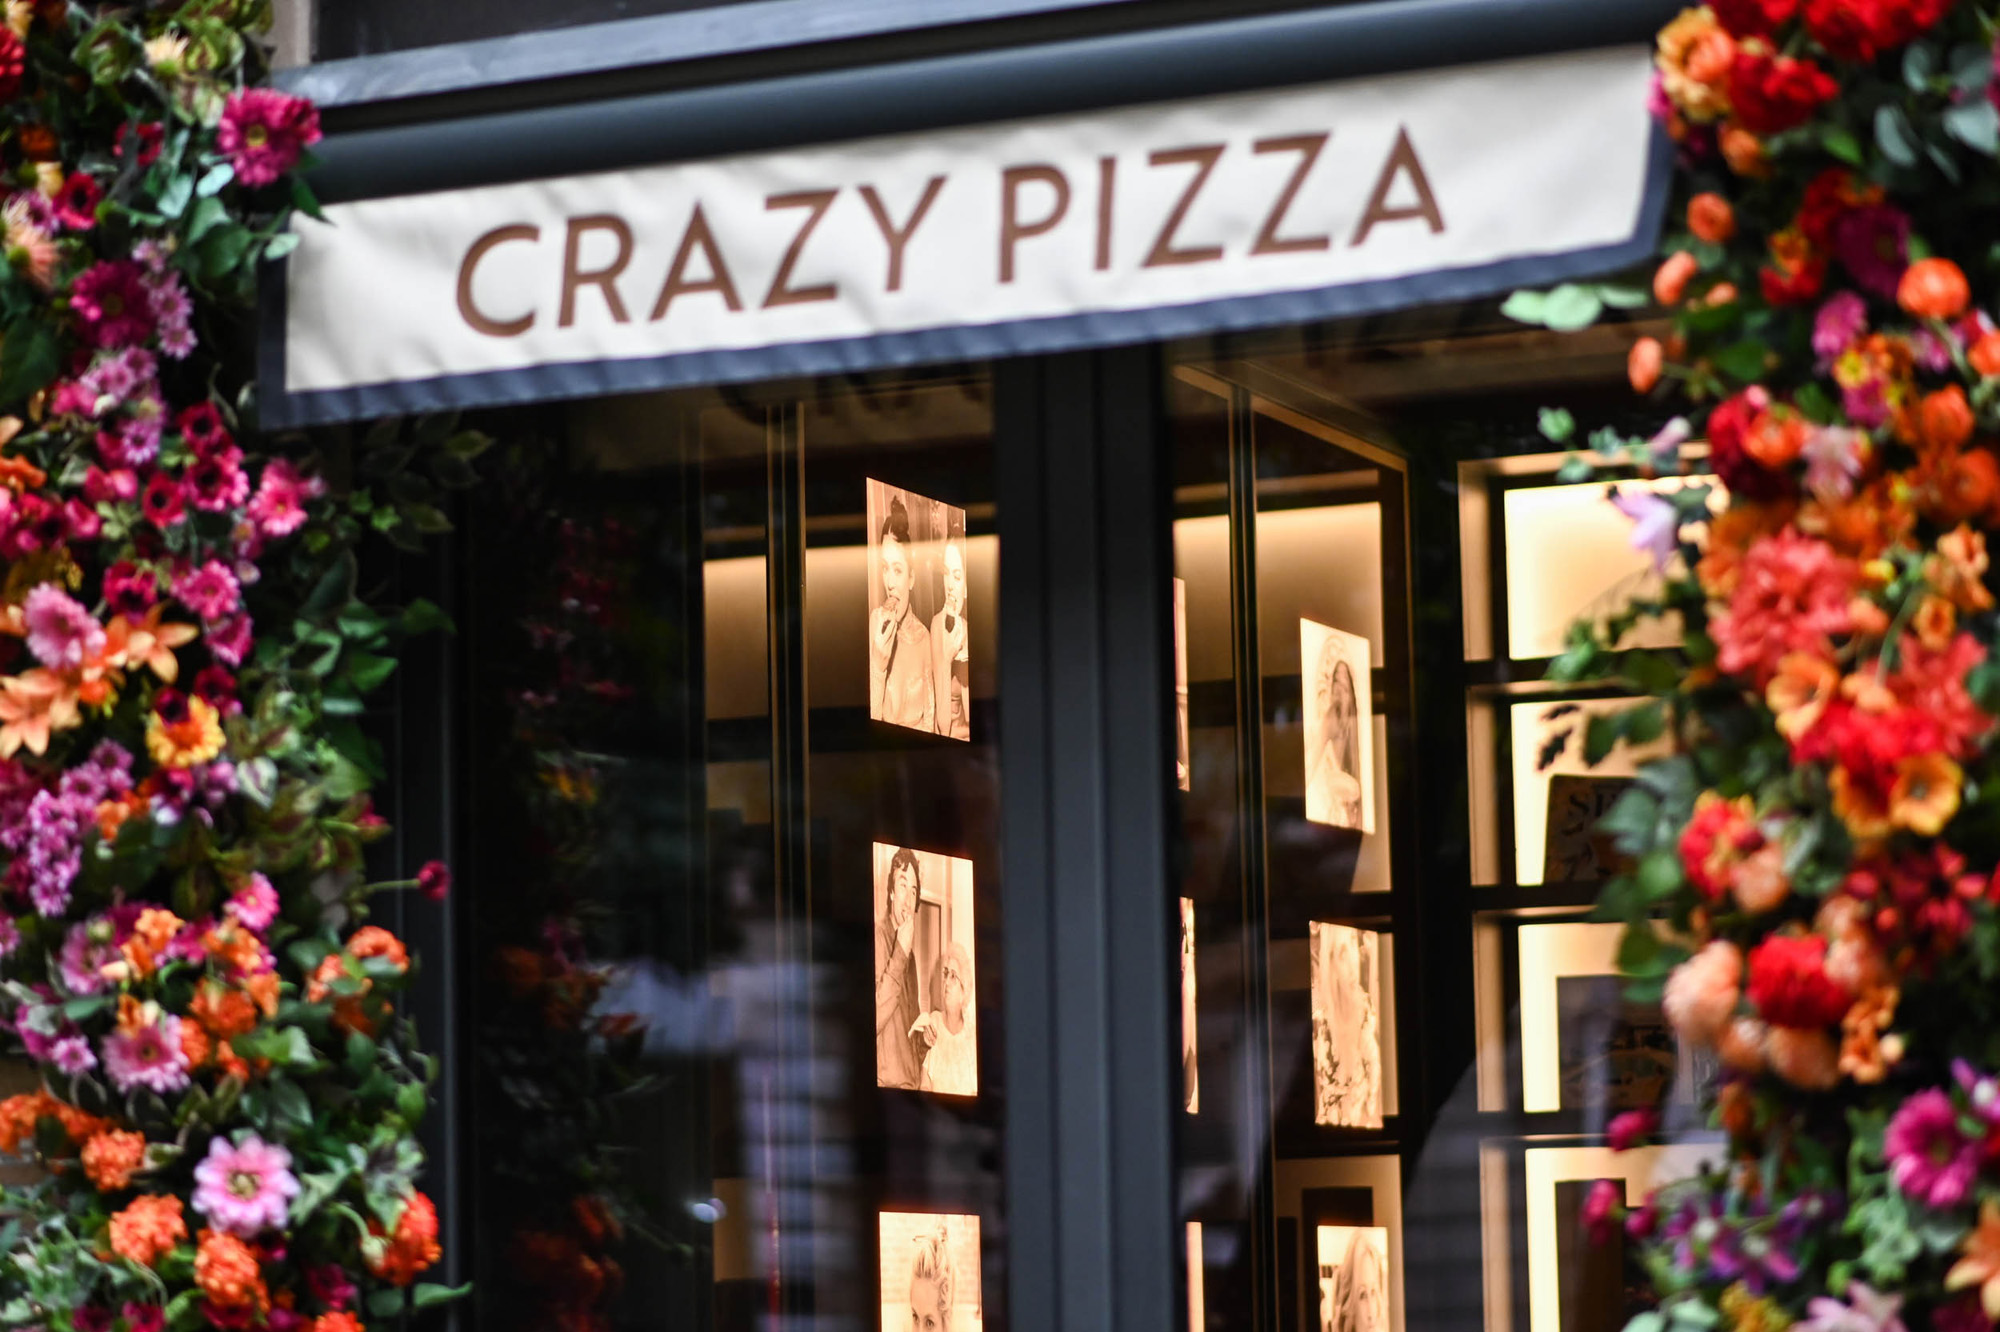 Crazy Pizza Rome.